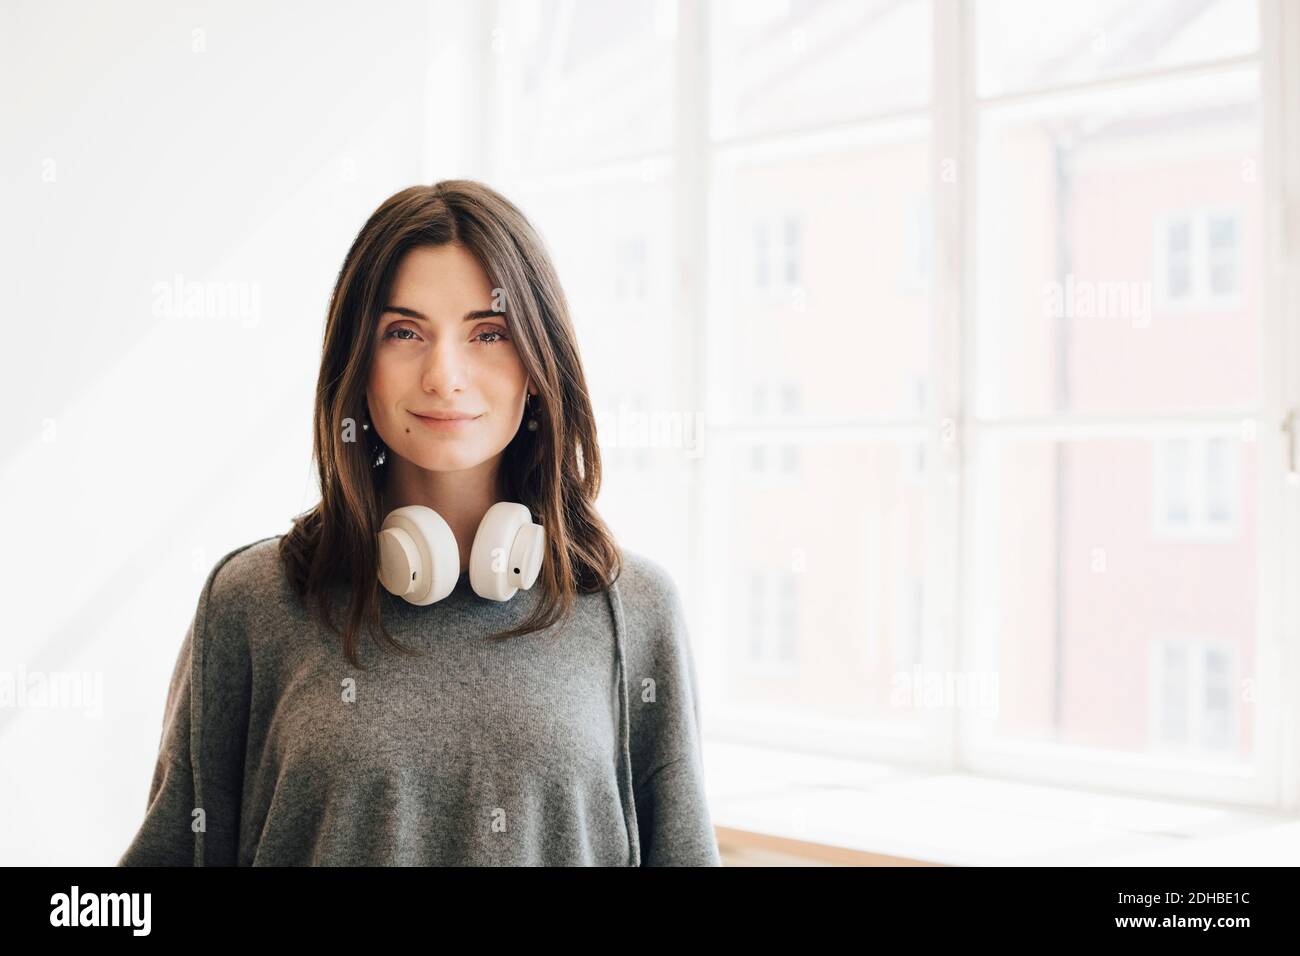 Portrait der weiblichen Computer-Programmierer mit Kopfhörer steht gegen Fenster Im Büro Stockfoto